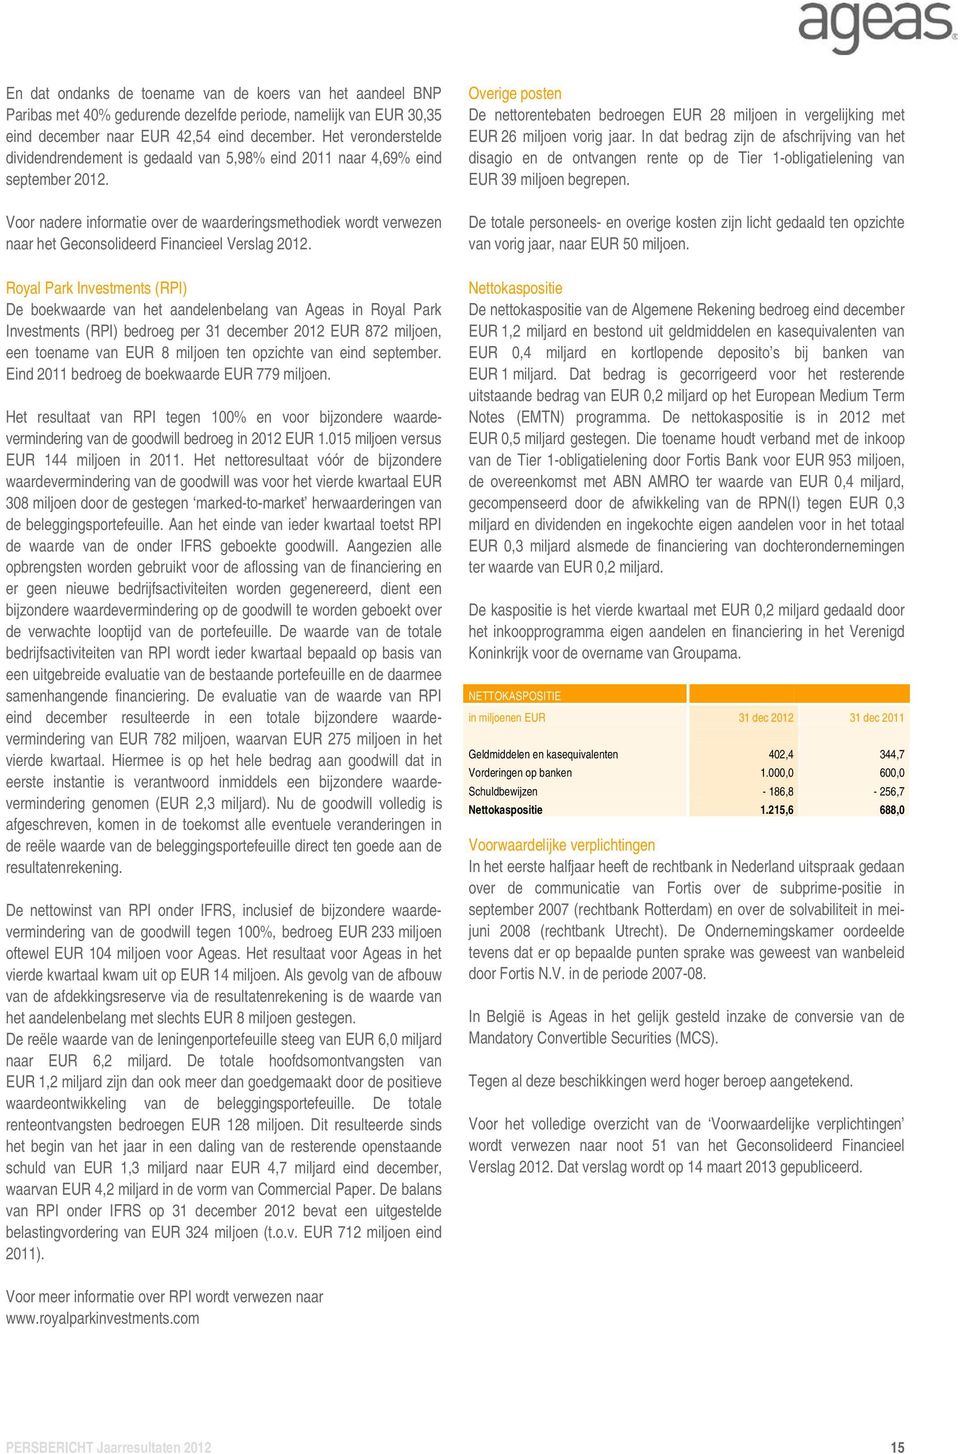 Voor nadere informatie over de waarderingsmethodiek wordt verwezen naar het Geconsolideerd Financieel Verslag 2012.